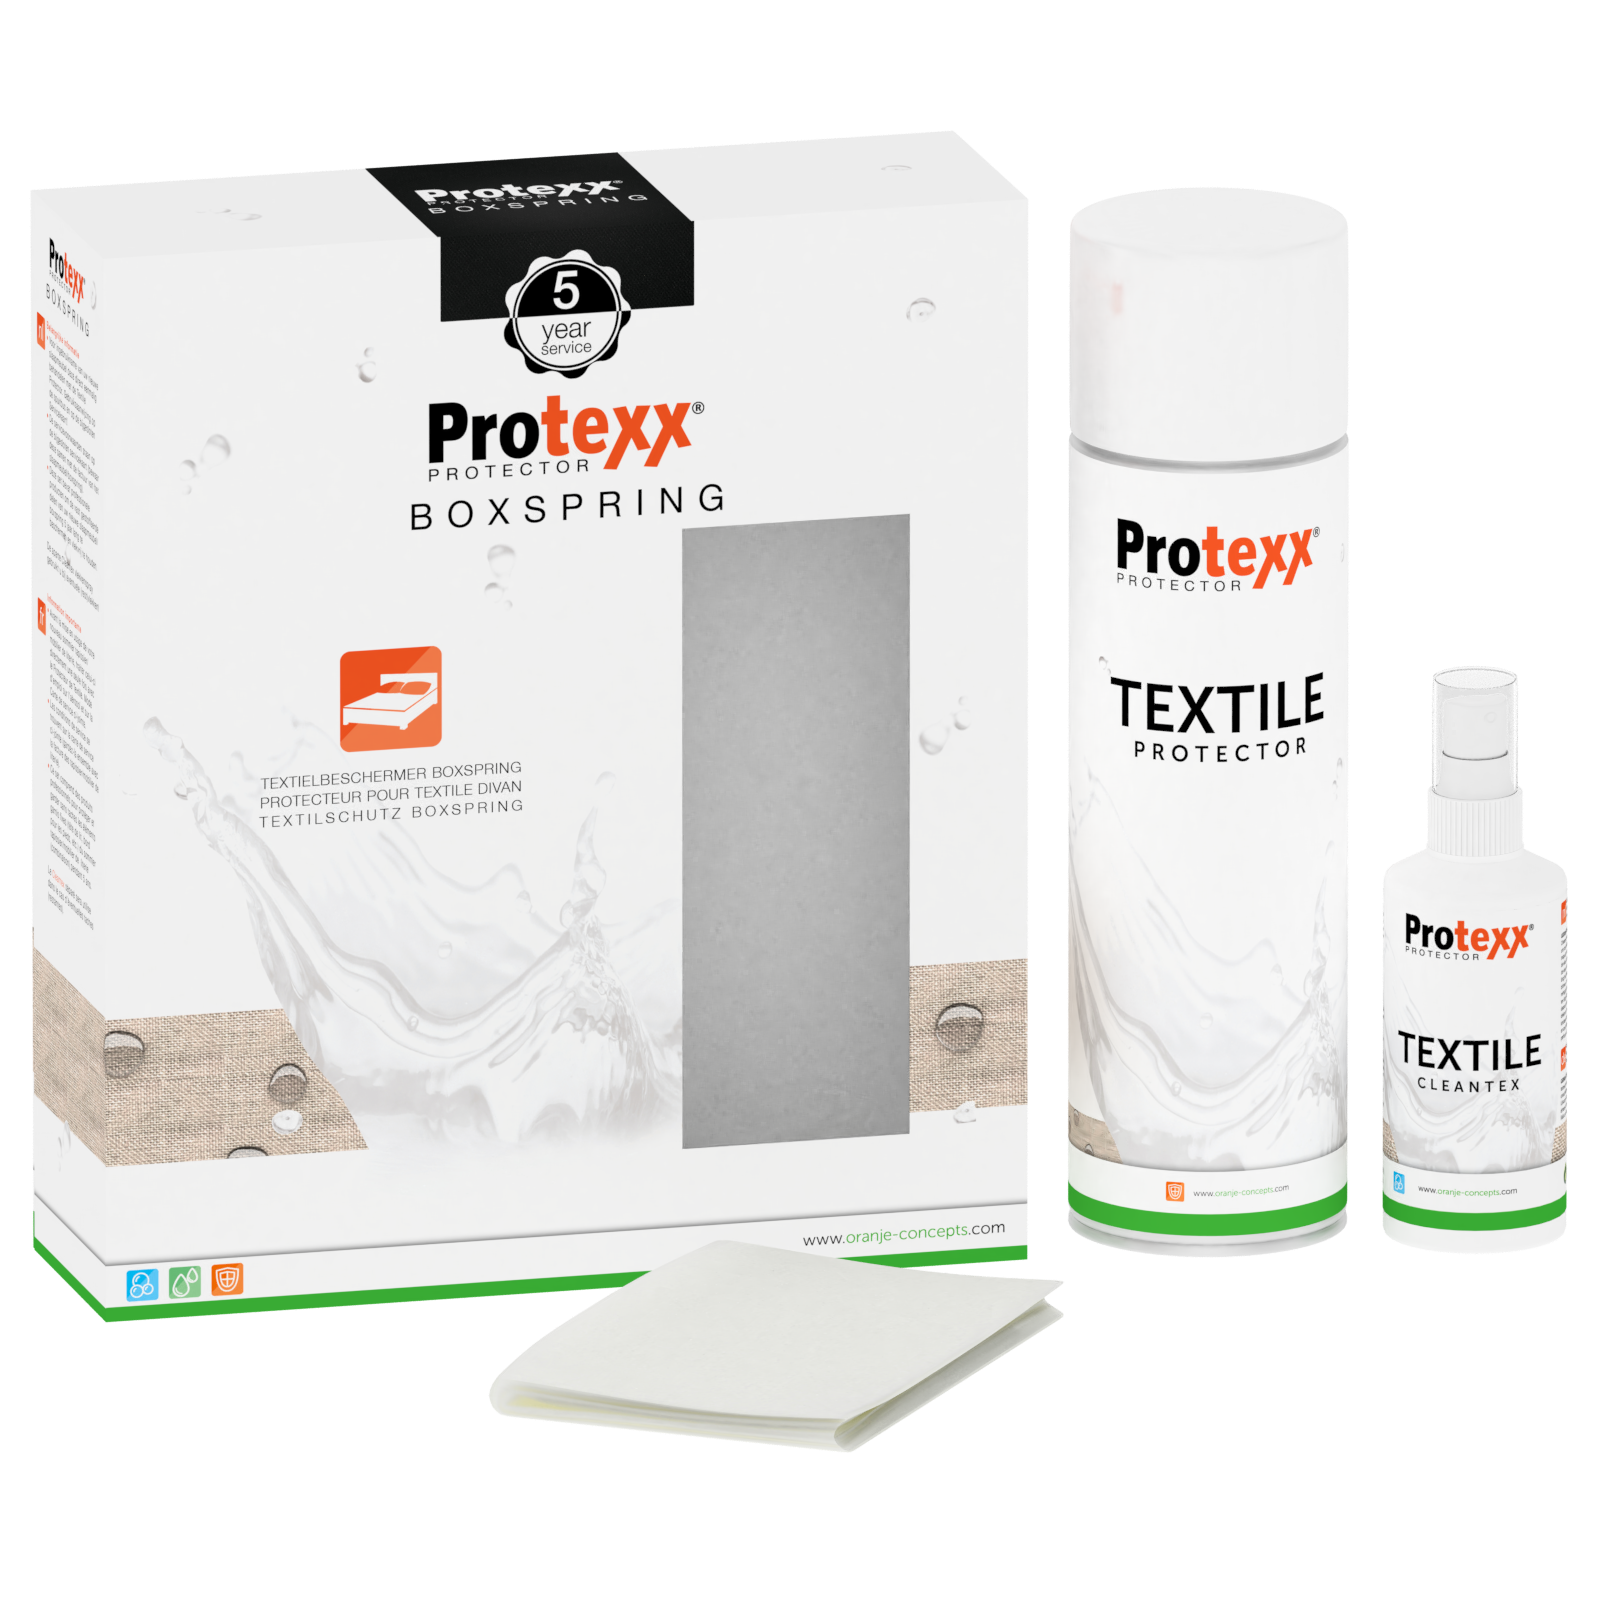 Definitief Onverbiddelijk afdeling Protexx Boxspring Textiel Protector + 5 jaar vlekkenservice kopen |  Sleepfast